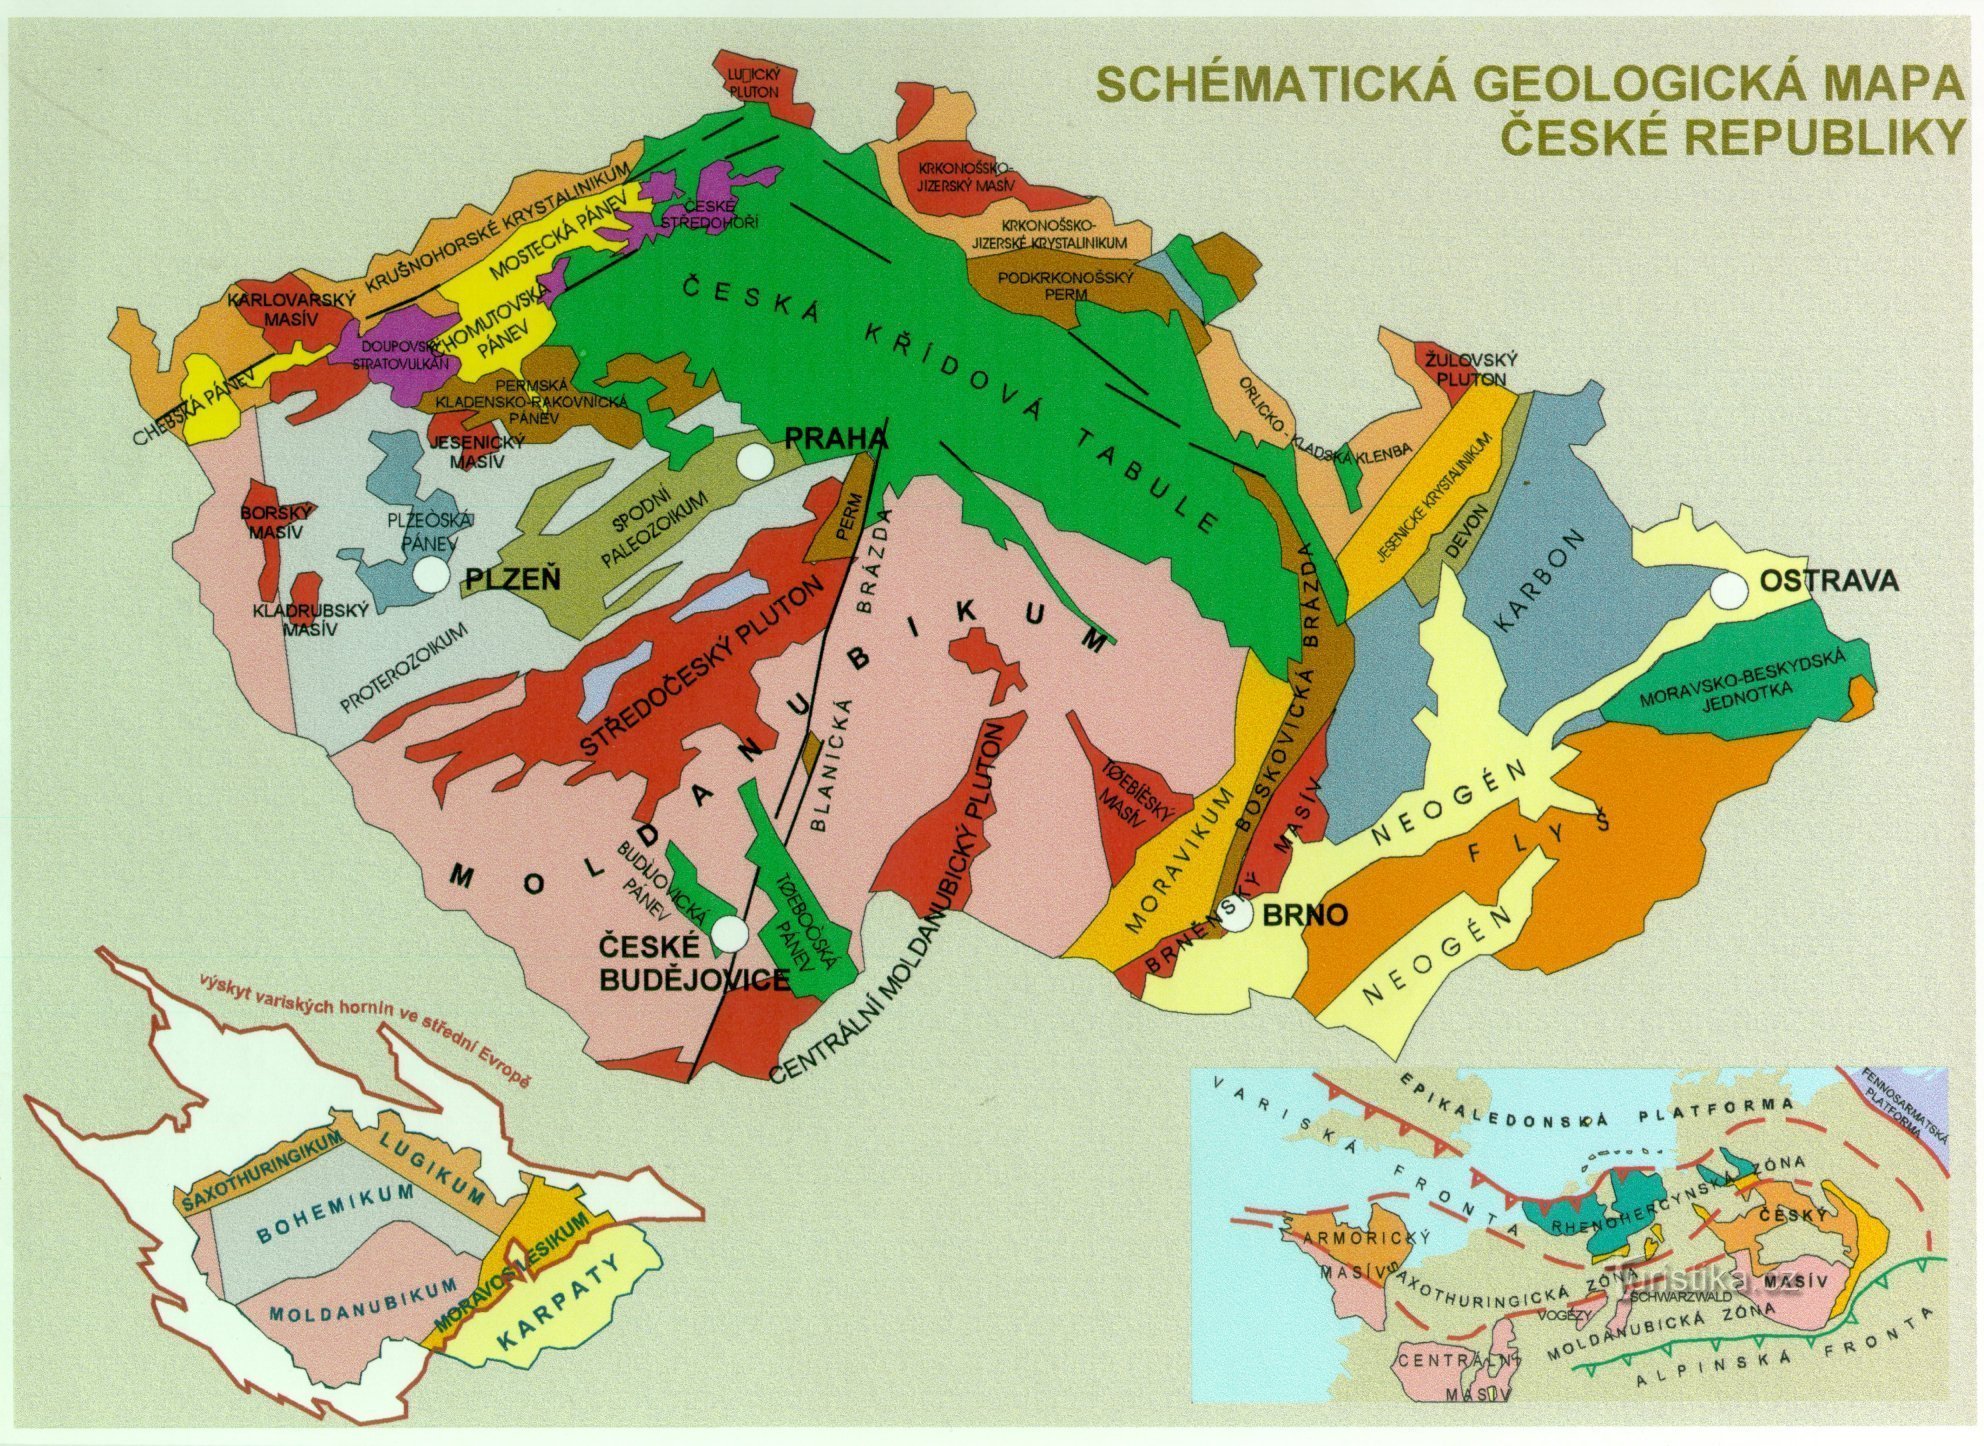 Csehország geológiai térképe - kiegészítő kép a szöveghez (a https://www.ig.